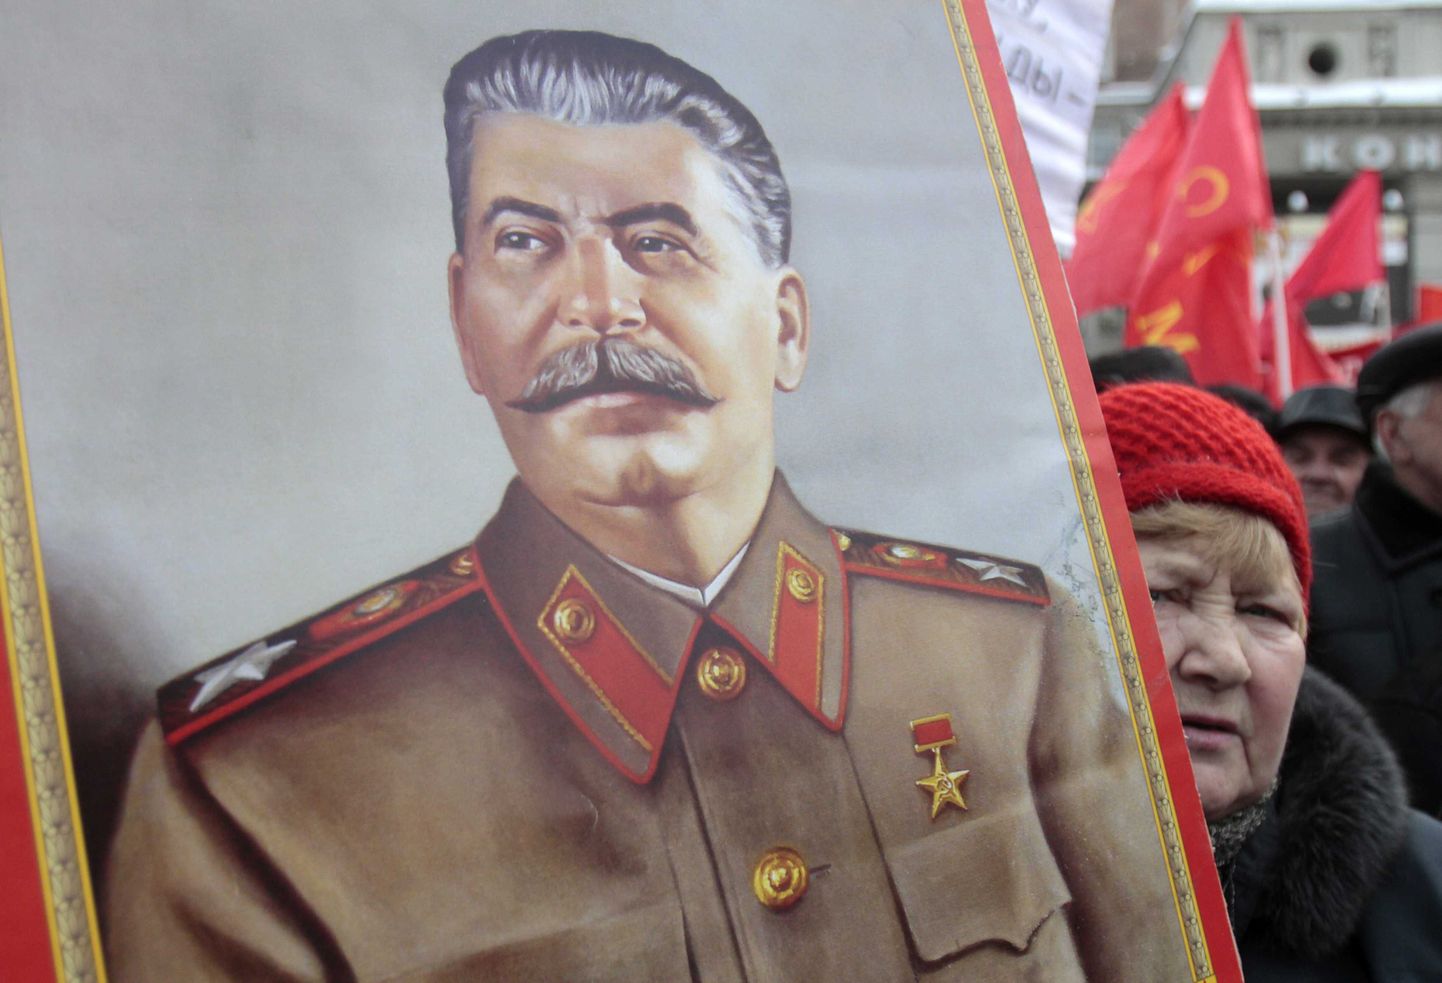 Портрет Сталина.